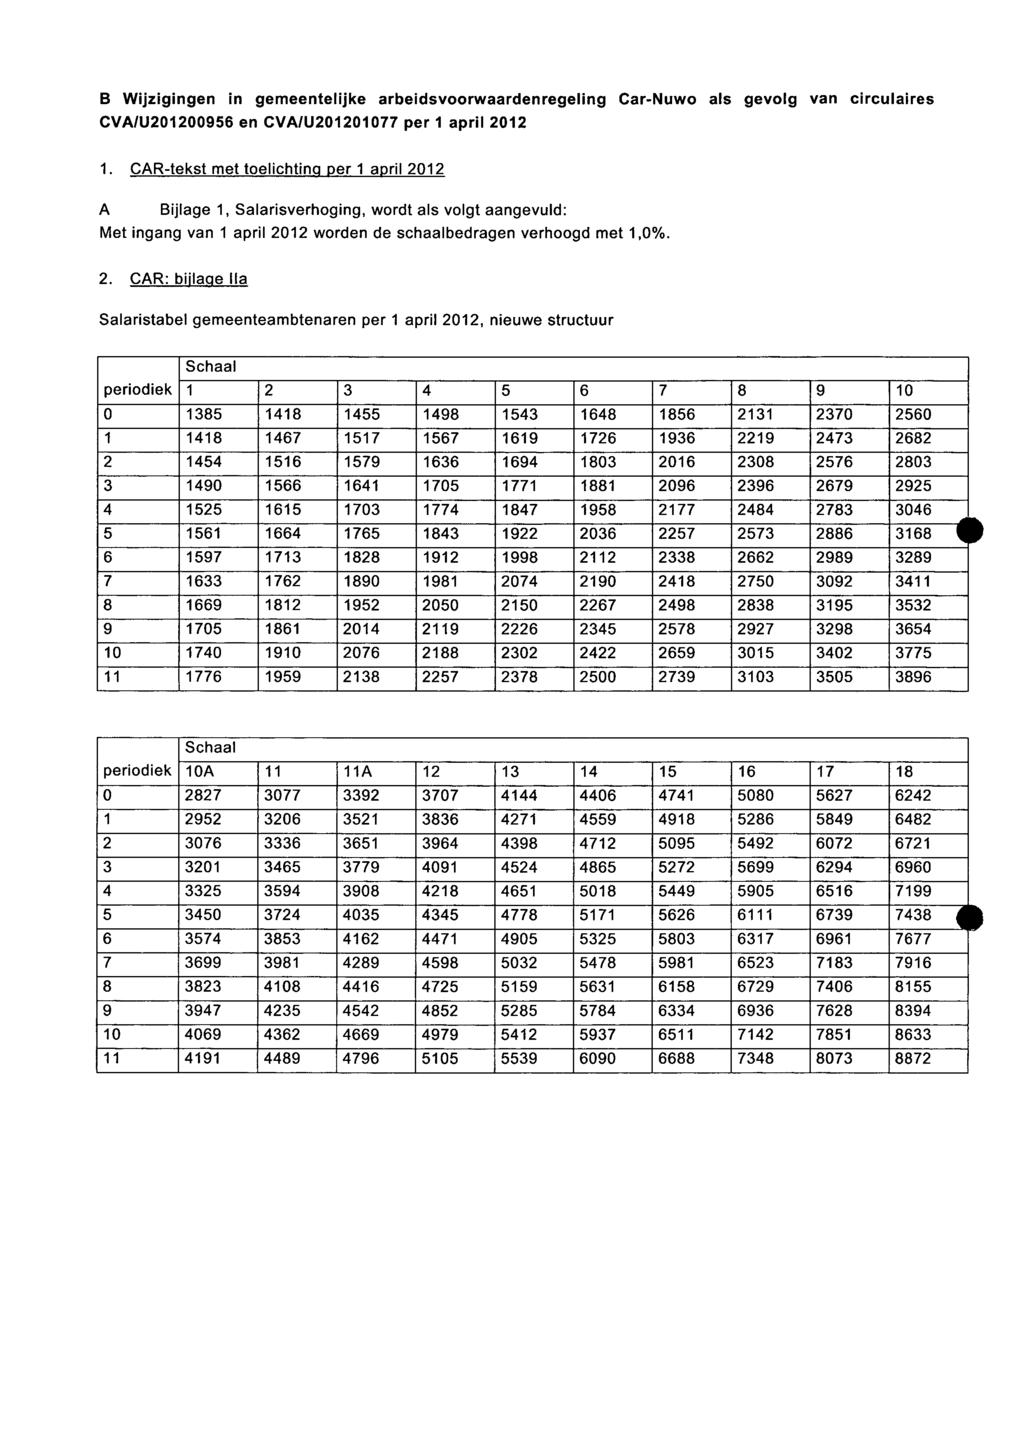 B Wijzigingen in gemeentelijke arbeidsvoorwaardenregeling Car-Nuwo als gevolg van circulaires CVA/U201200956 en CVA/U201201077 per 1 april 2012 1.